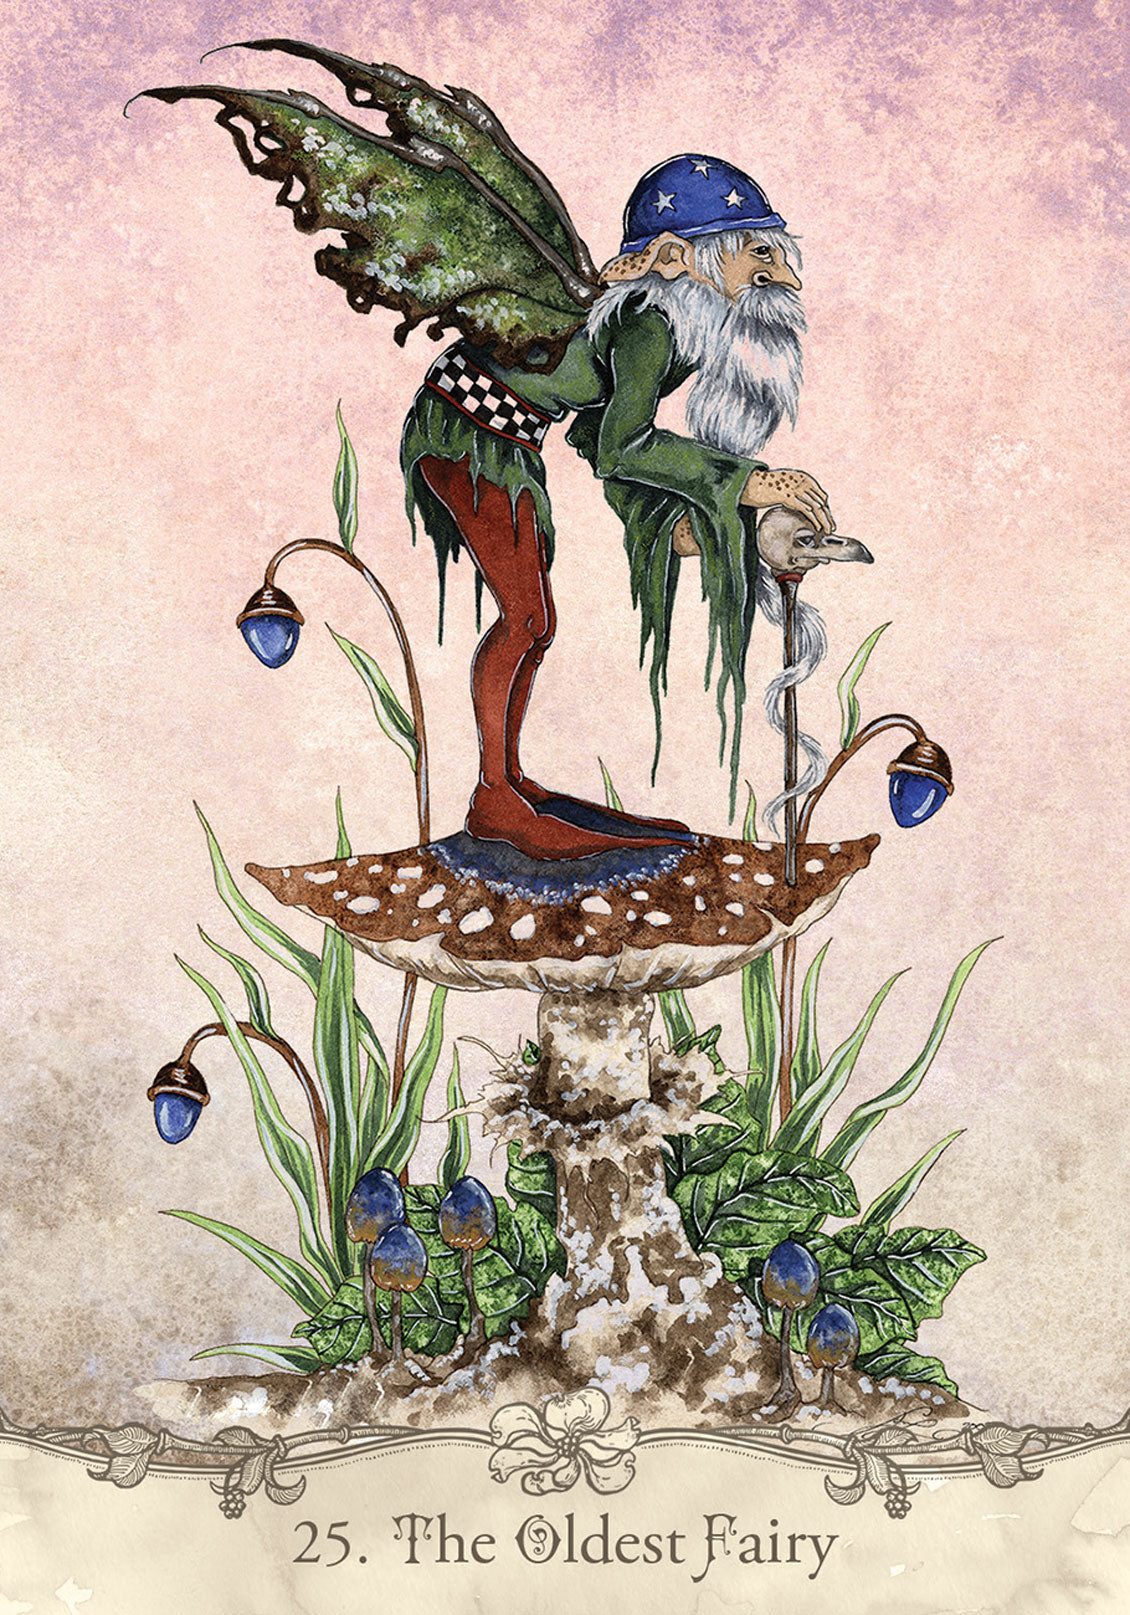 The Oldest Fairy card